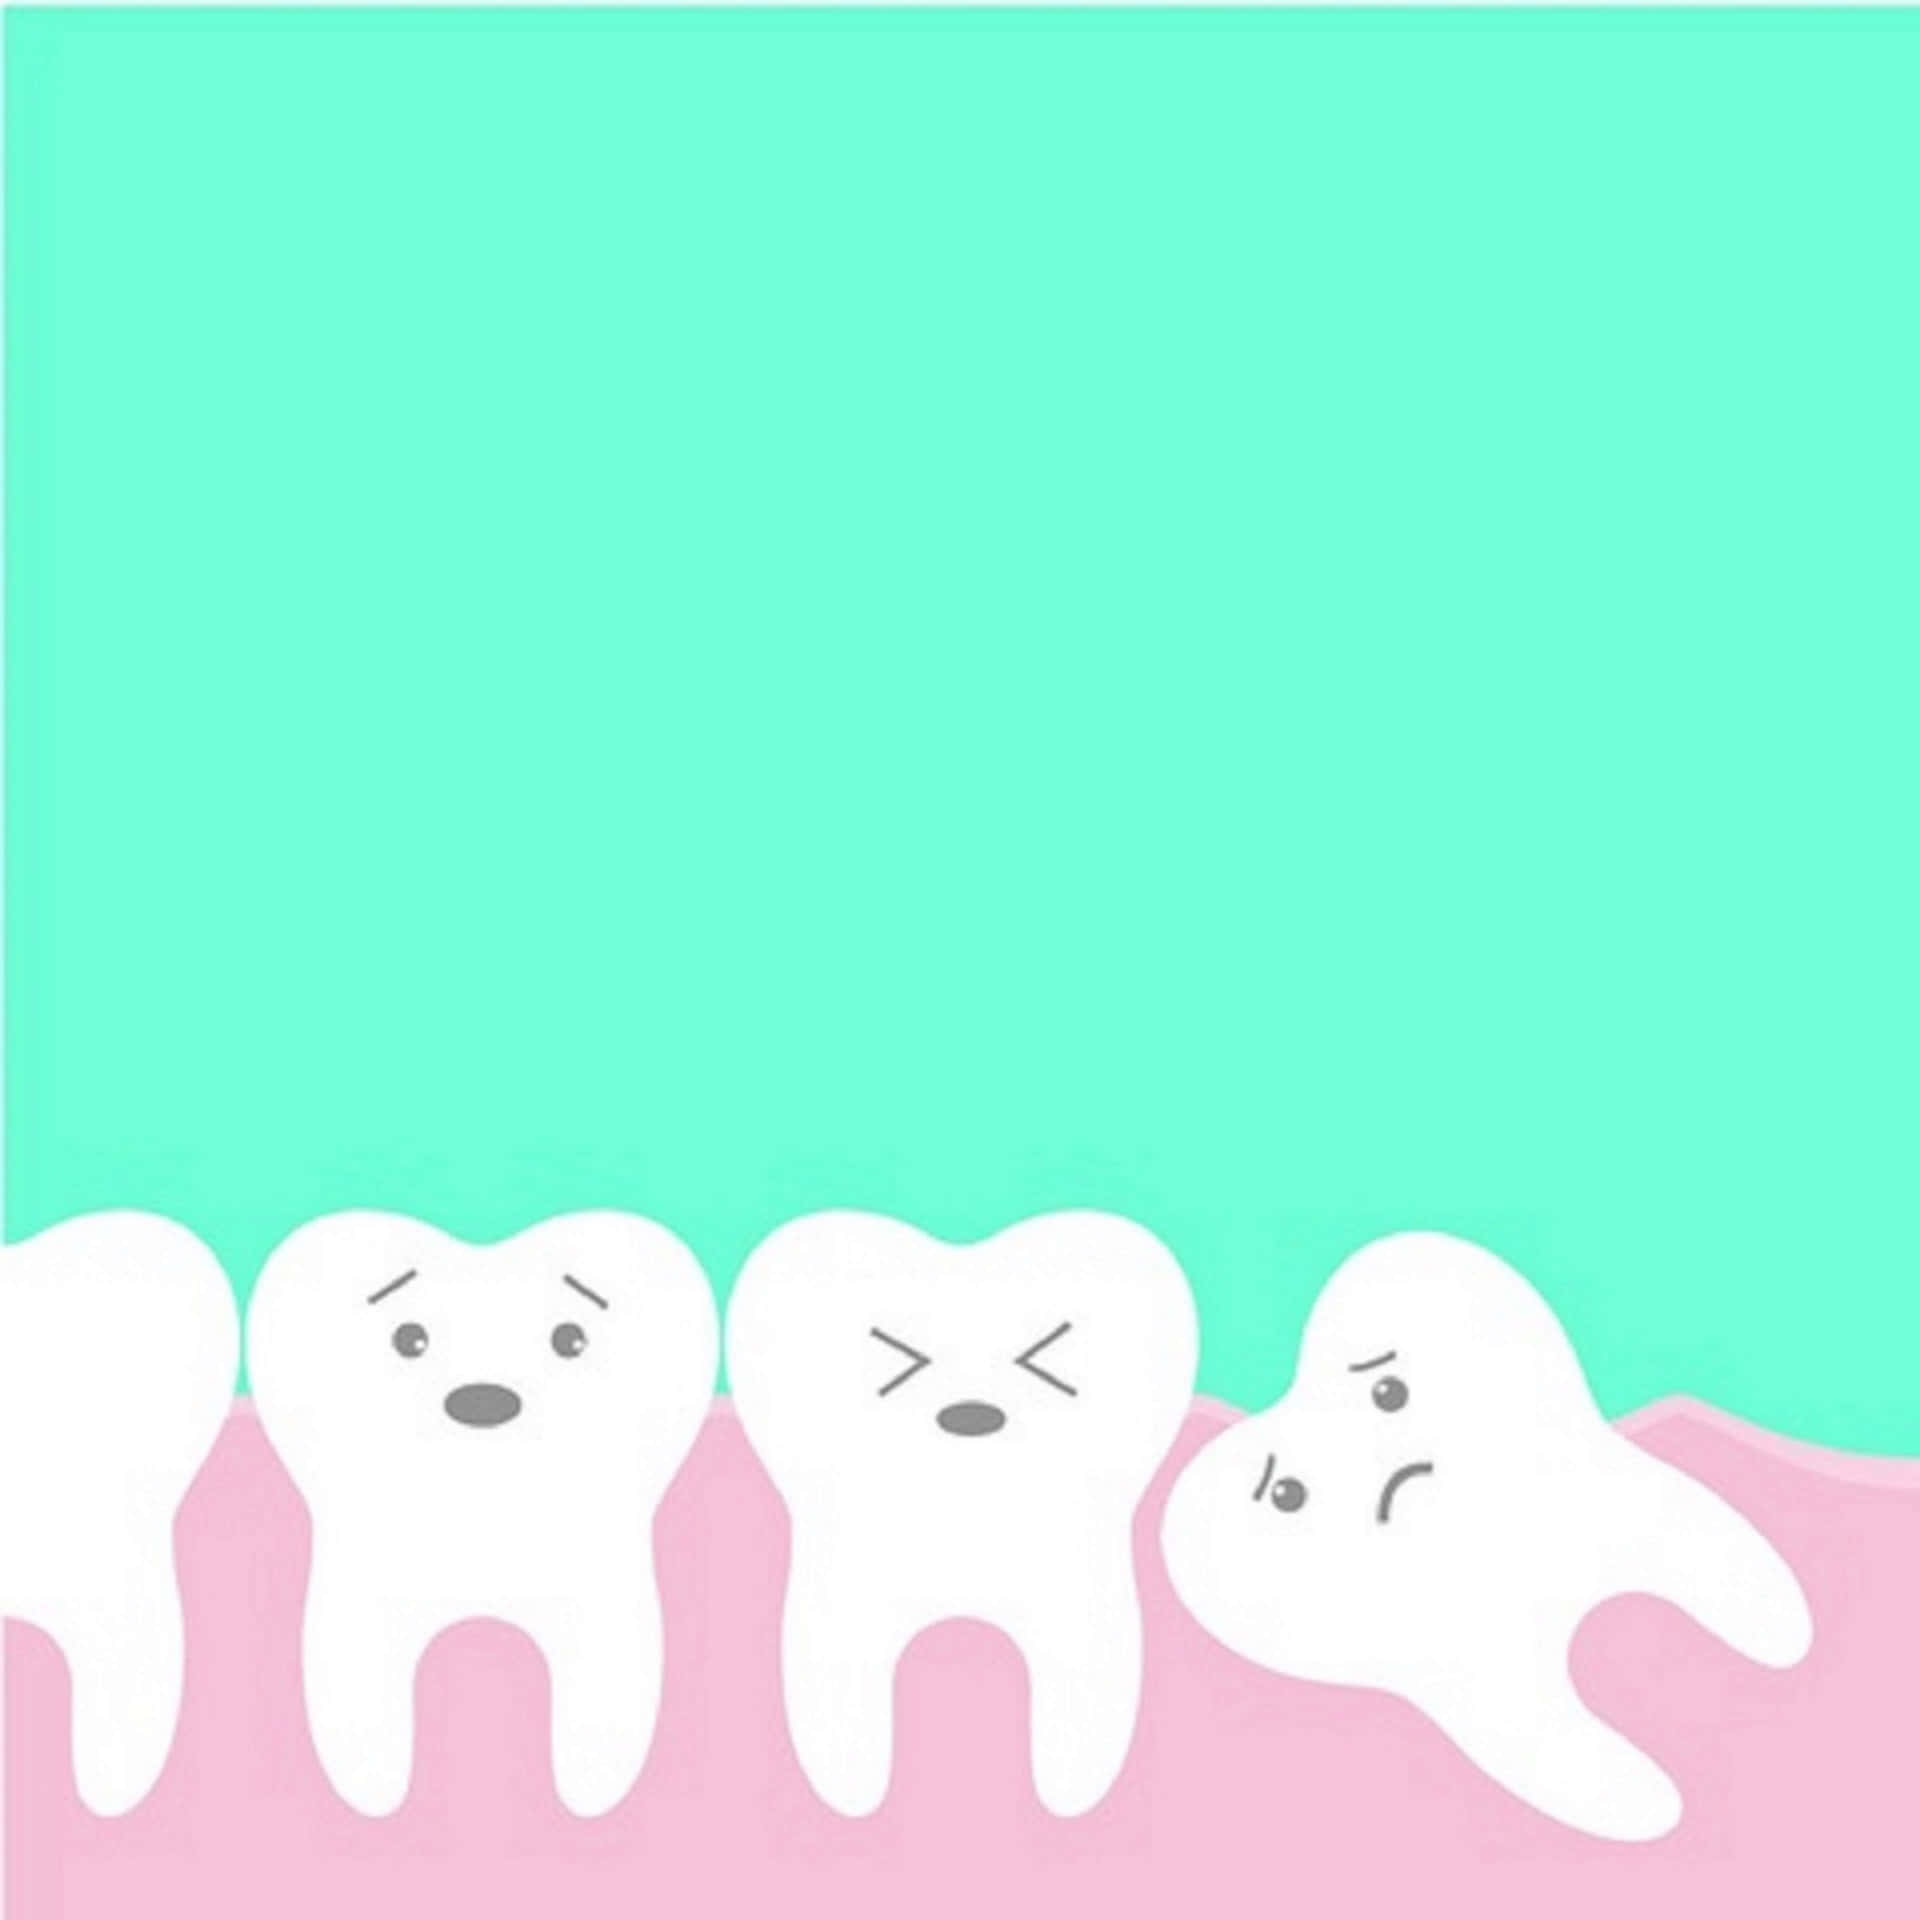 Dentistaimagem De 3840 X 3840 Pixels.